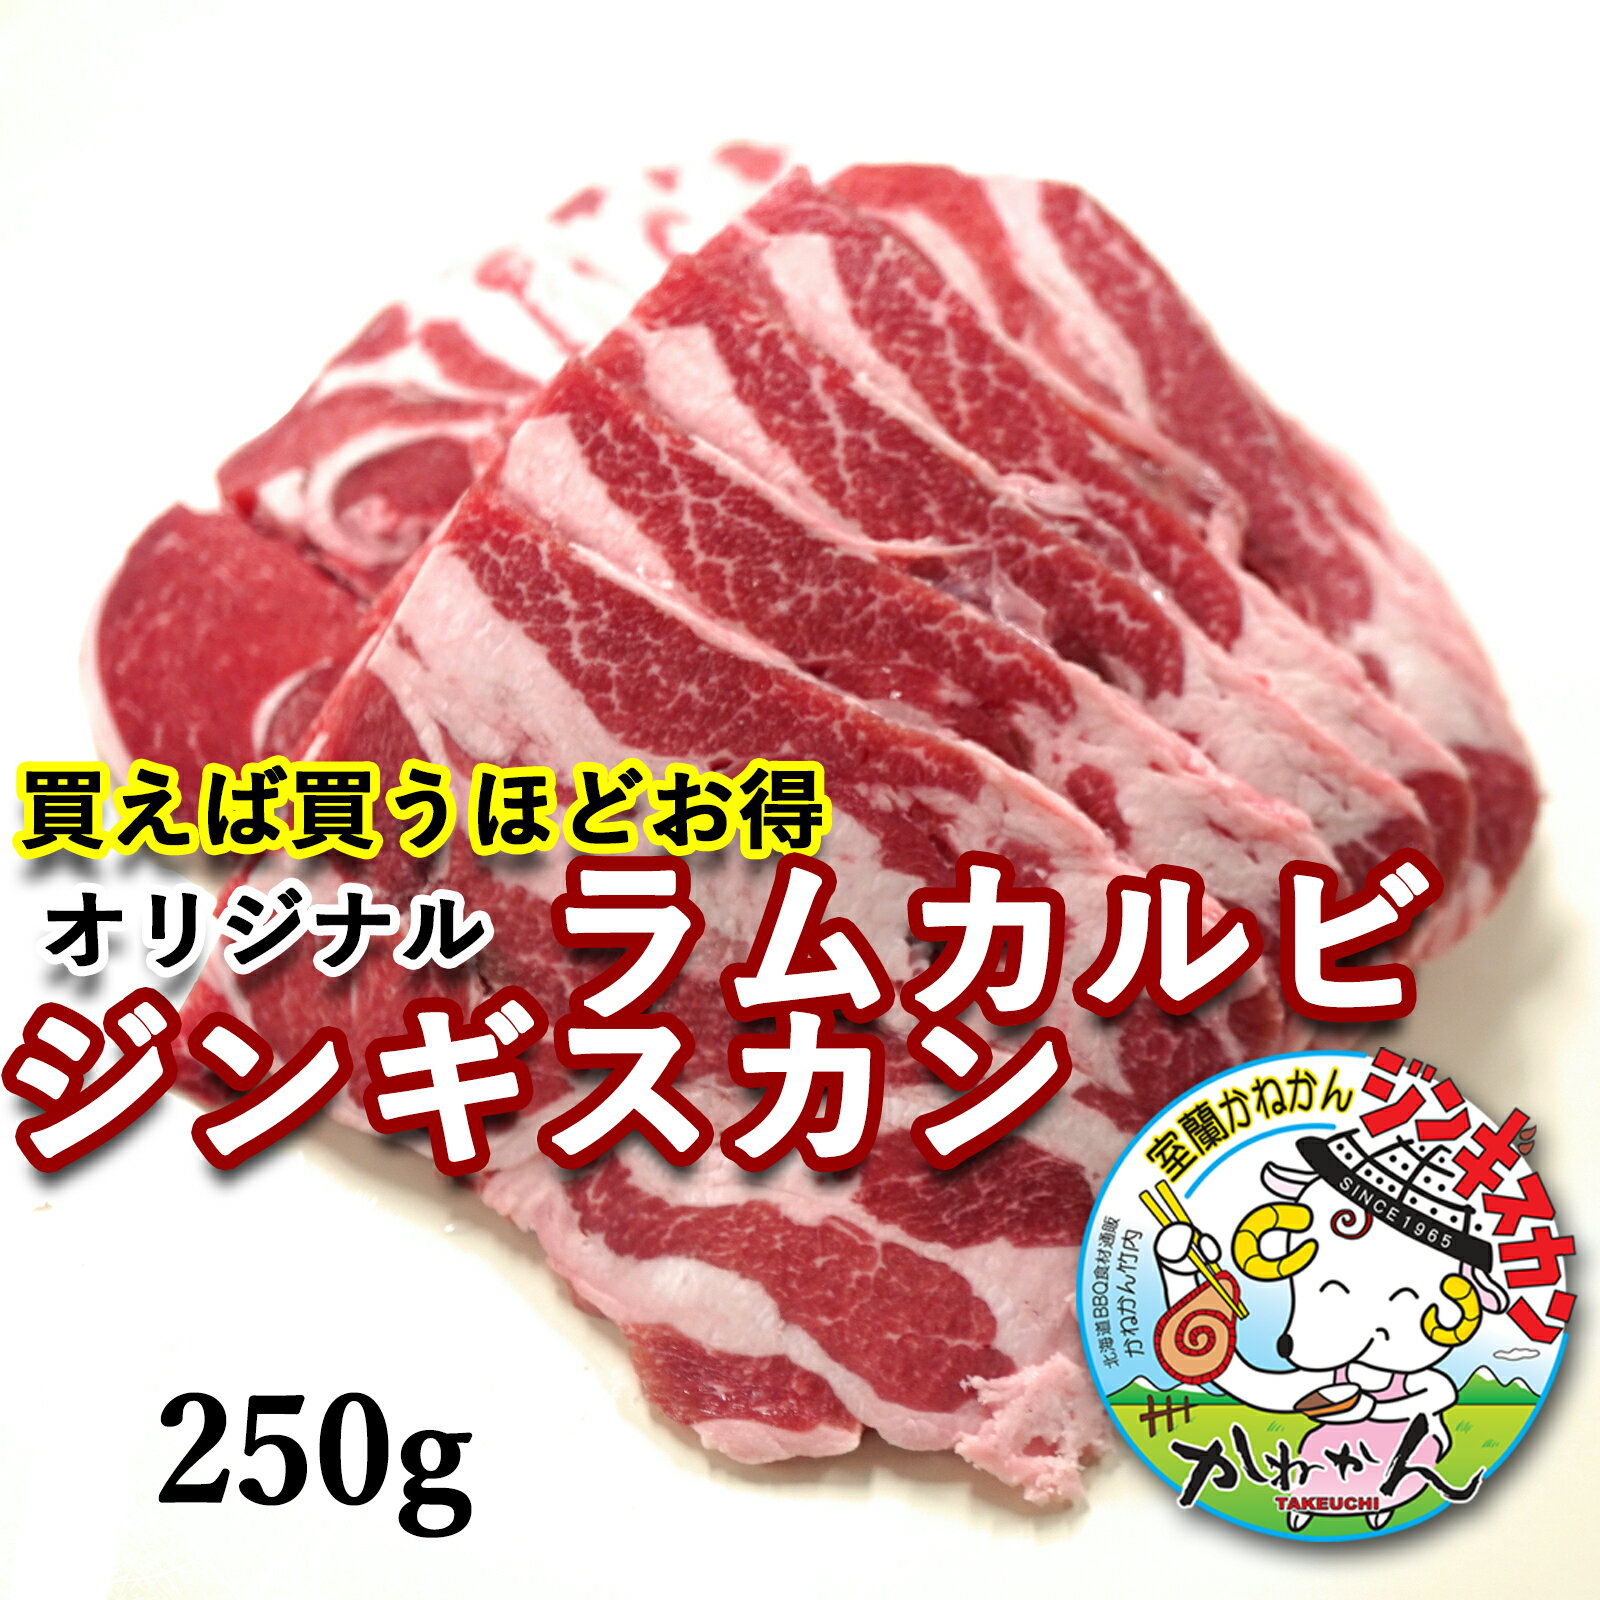 かねかん 買うほどお得 ジンギスカン ラムカルビ 250g 1パック 送料無料 買うほどお得 北海道 羊肉 焼肉 BBQ 室蘭・札幌 スタイル 初めての方にもおすすめ ラム肉 生ラム肉 2個 買うと250